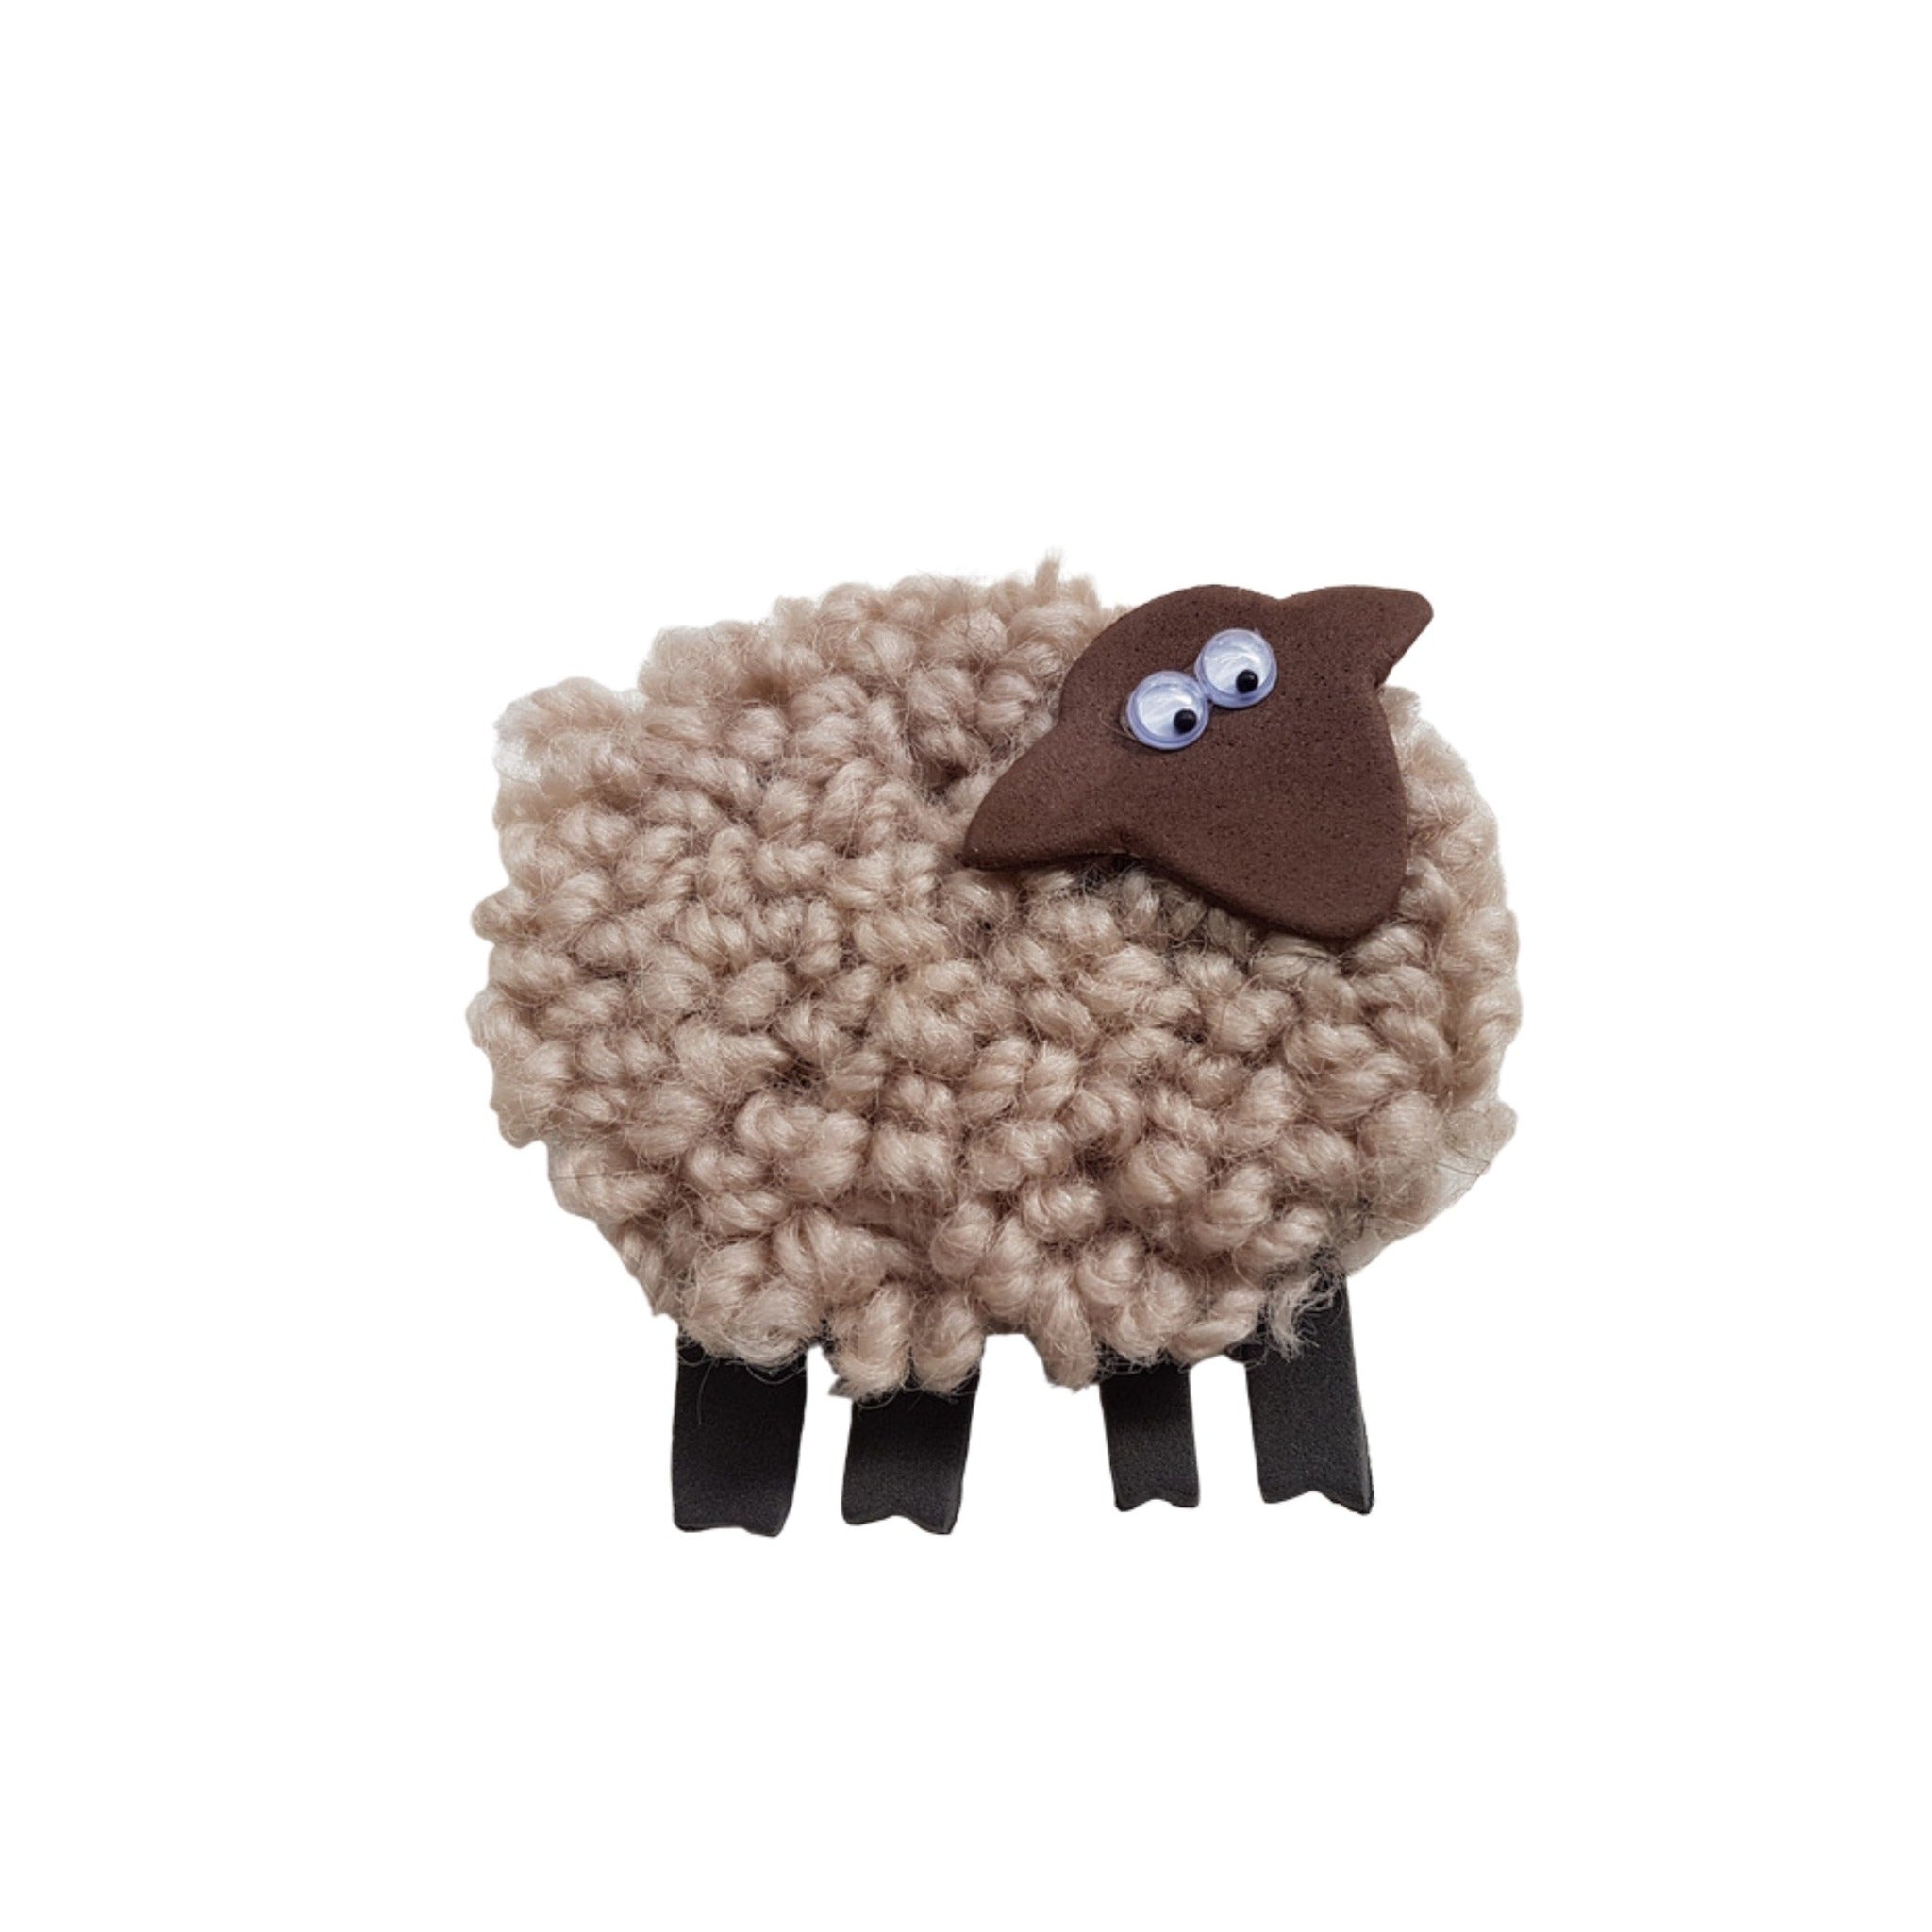 Carpet sheep magnet